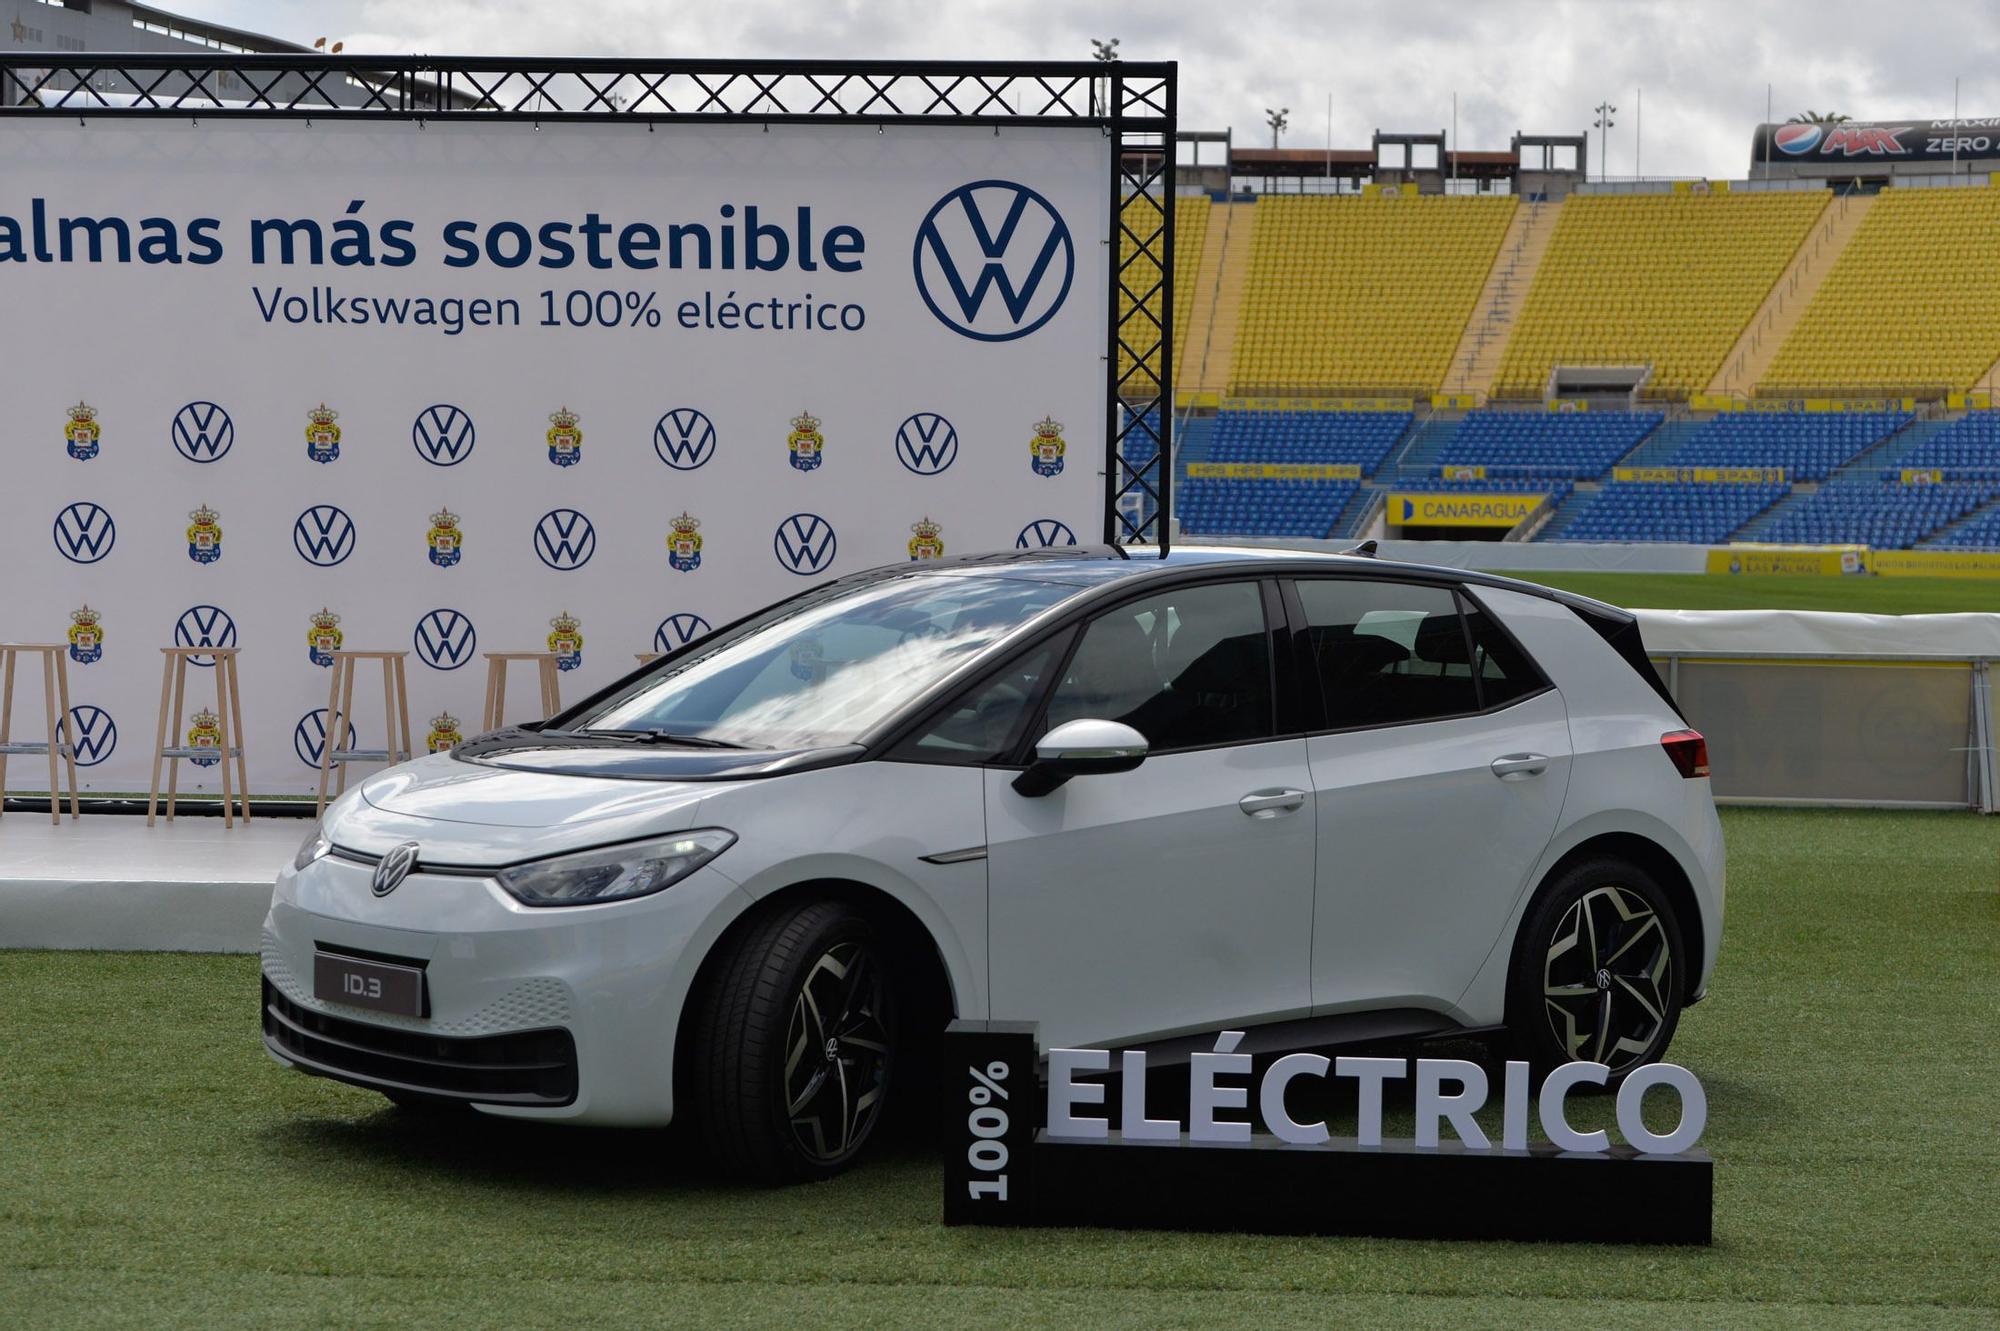 La UD Las Palmas recibe la nueva flota de coches eléctricos Volkswagen ID.3